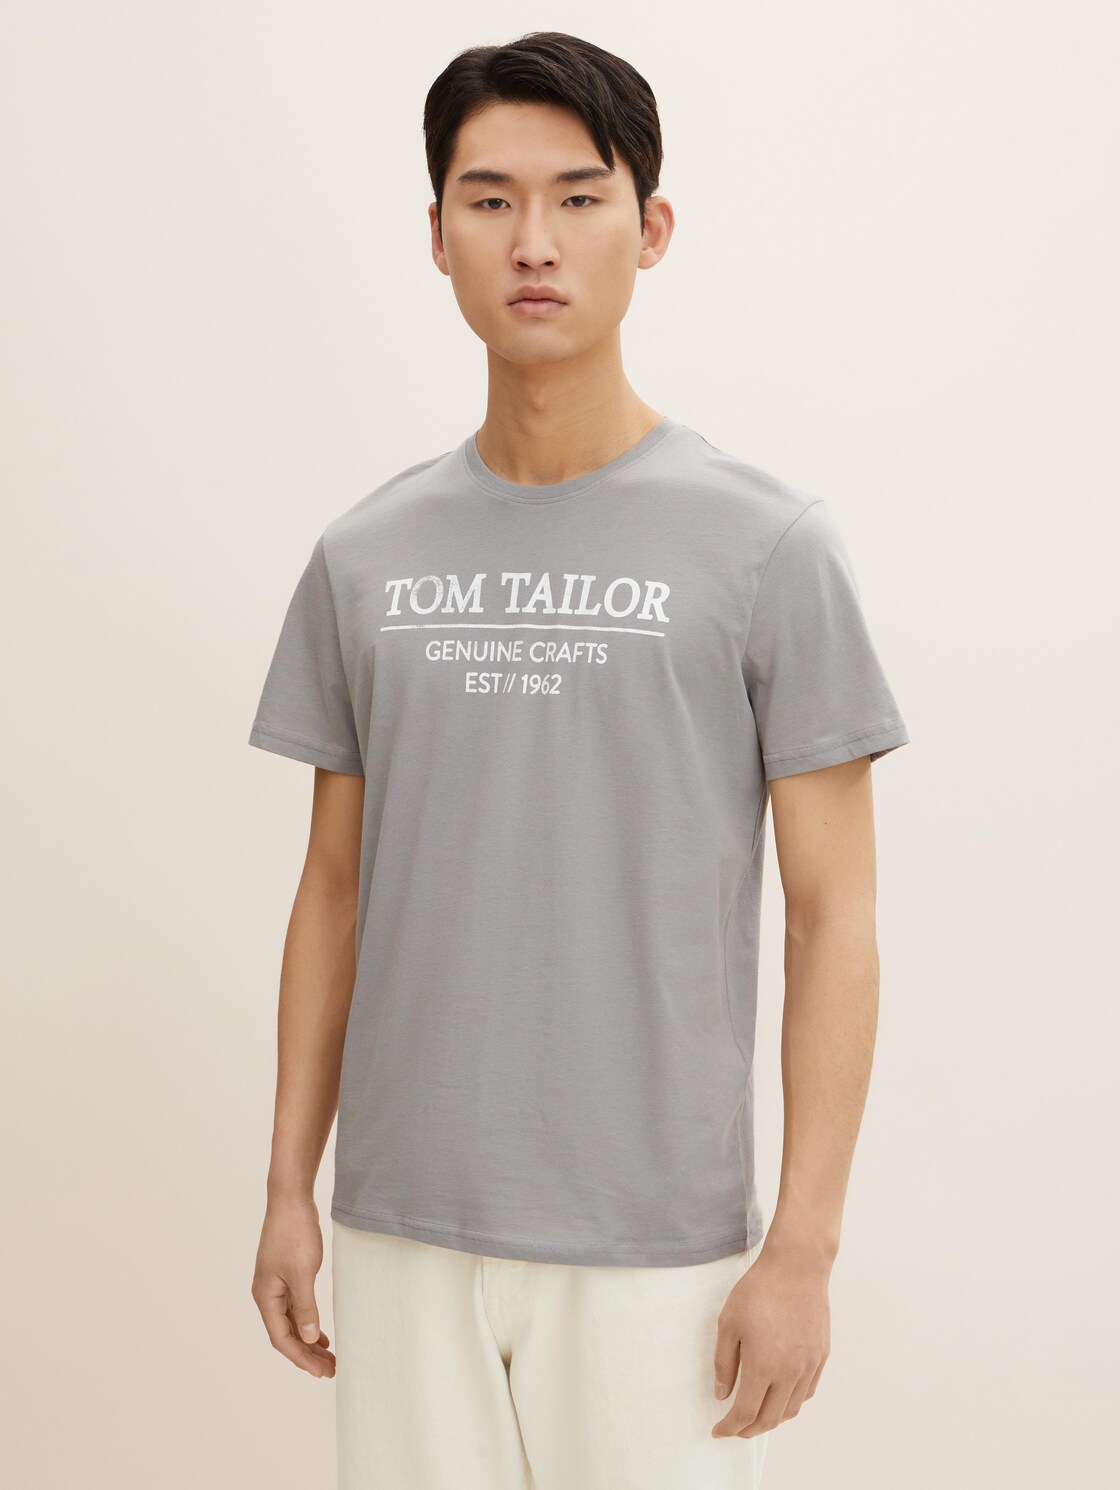 TOM TAILOR Herren T-Shirt mit Bio-Baumwolle, grau, Logo Print, Gr. XXL,